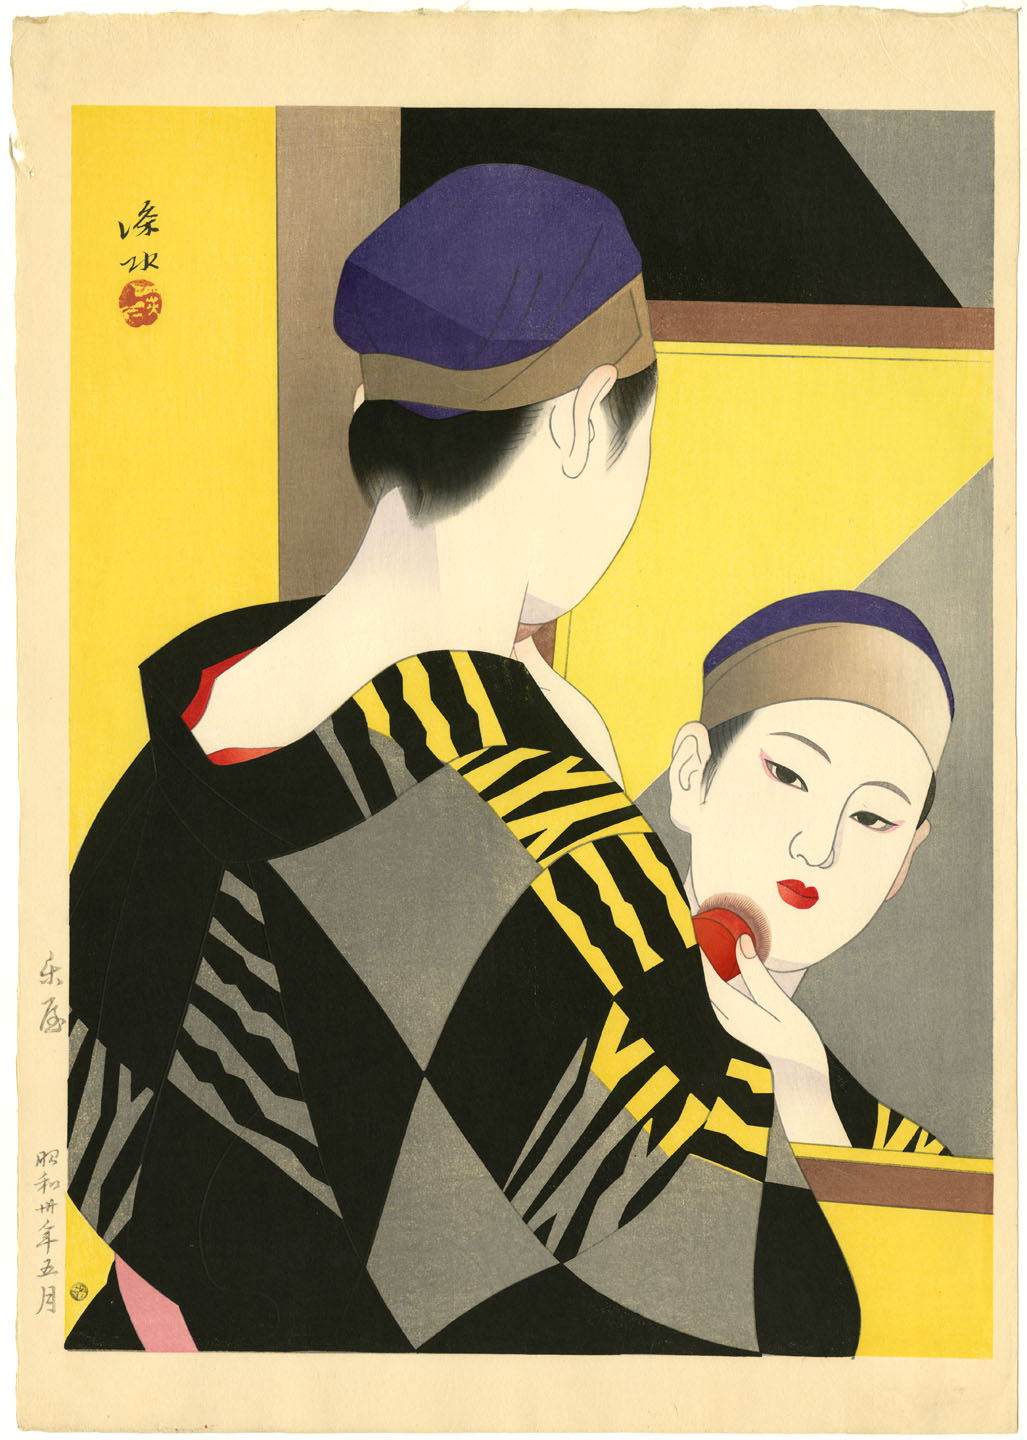 Promoted | Shin hanga: new prints of Japan